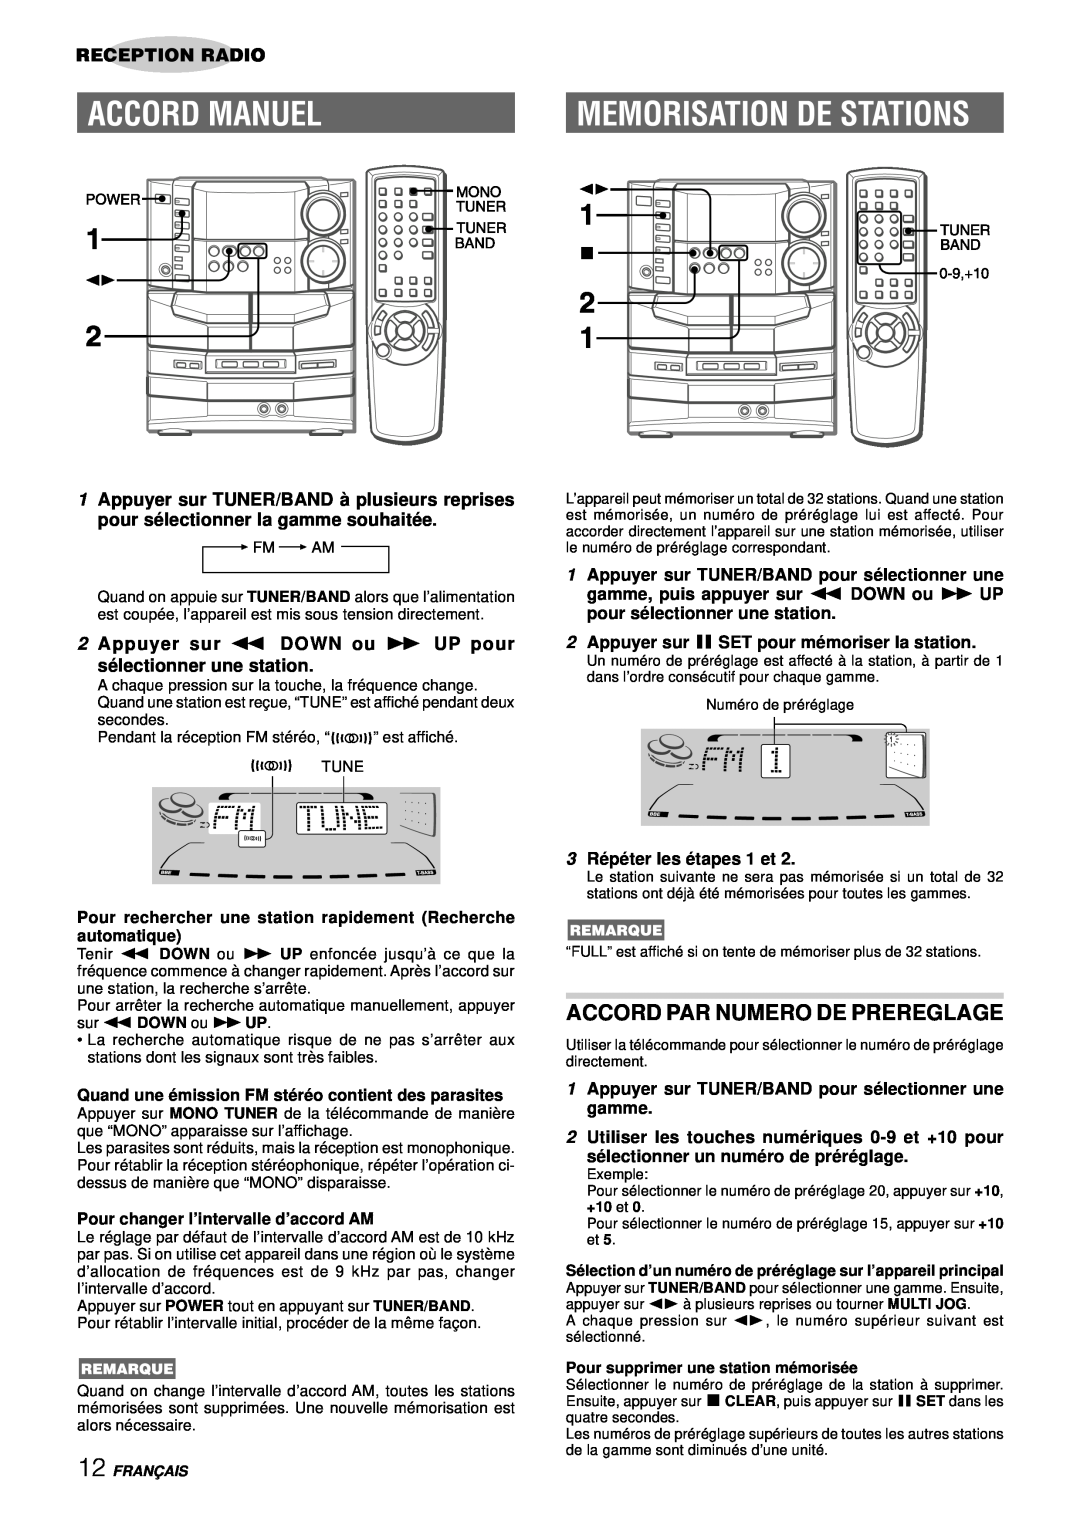 Aiwa NSX-DS8 manual Accord Manuel, Memorisation De Stations, Accord Par Numero De Prereglage, Reception Radio 